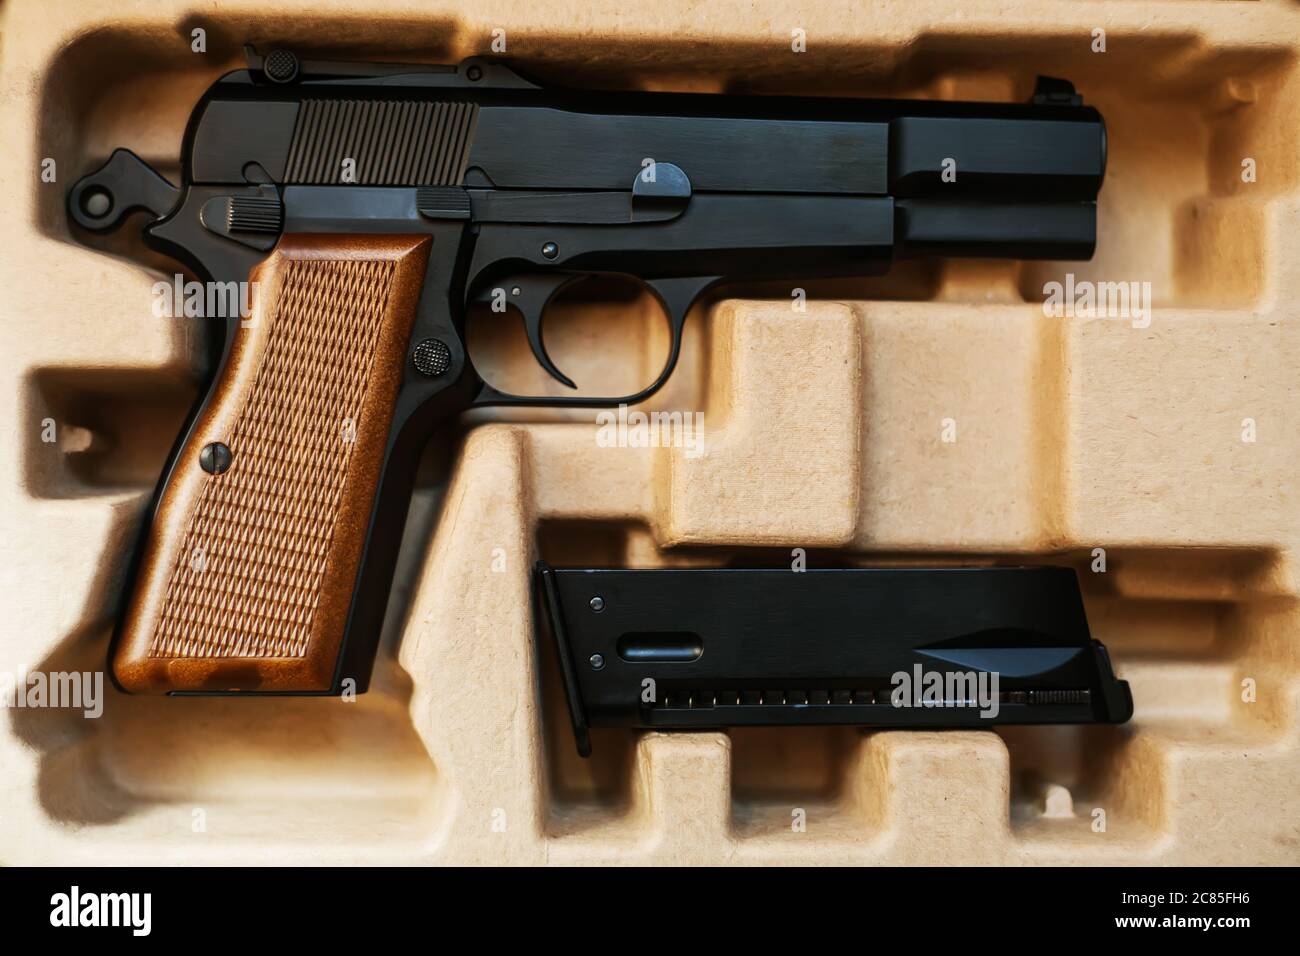 Dans une boîte en carton est un pistolet airsoft avec une poignée marron, et à côté de lui est un magazine. Vente et livraison d'armes. Banque D'Images